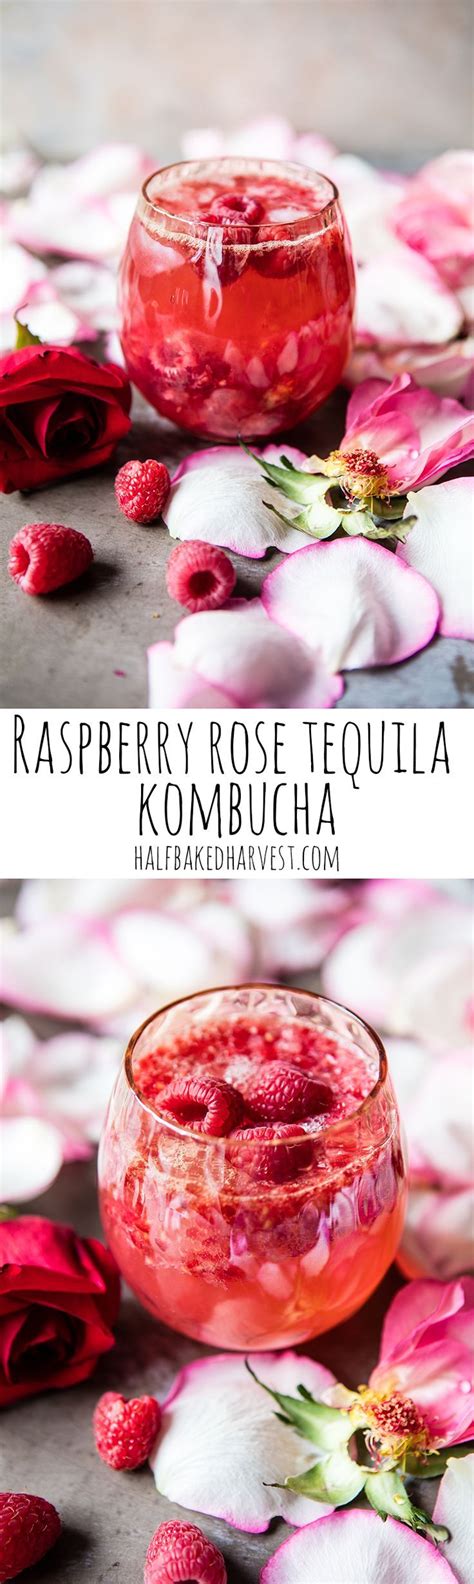 Raspberry Rose Tequila Kombucha Recipe Refreshing Drinks Recipes